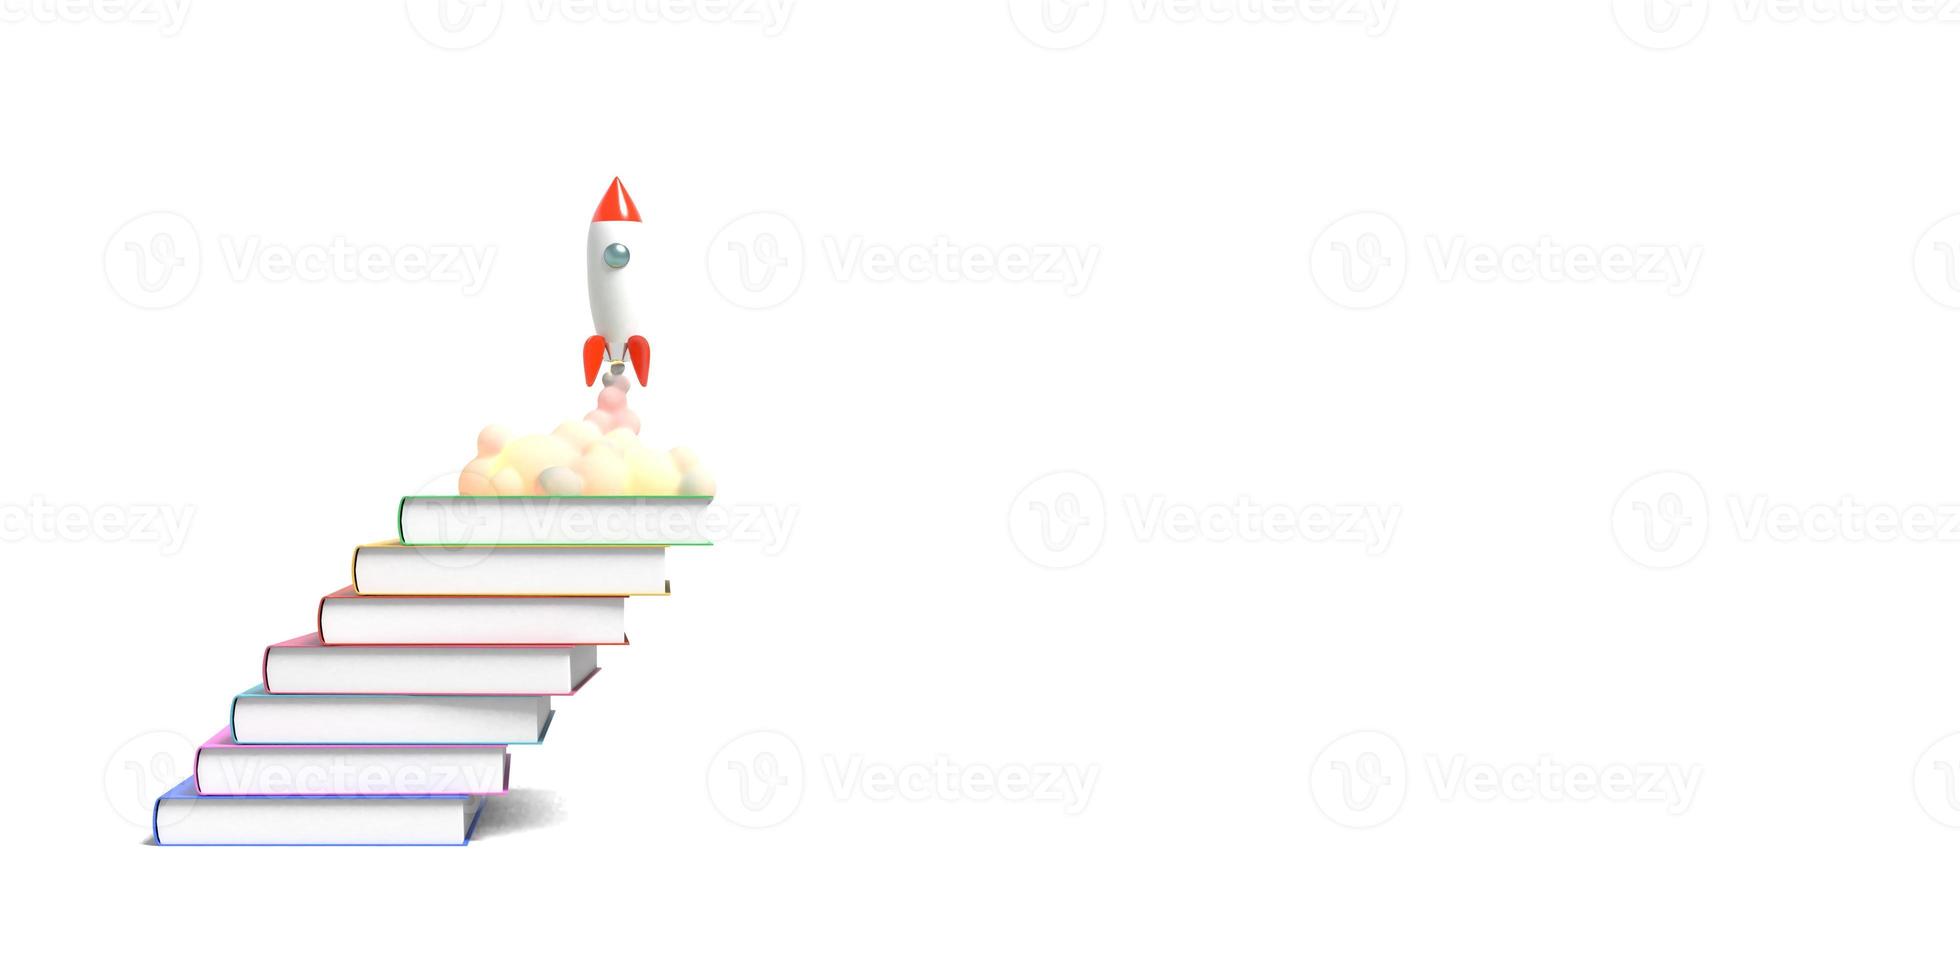 speelgoedraket stijgt op uit de boeken en spuwt rook op een witte achtergrond. symbool van verlangen naar onderwijs en kennis. school illustratie. 3D-rendering. foto